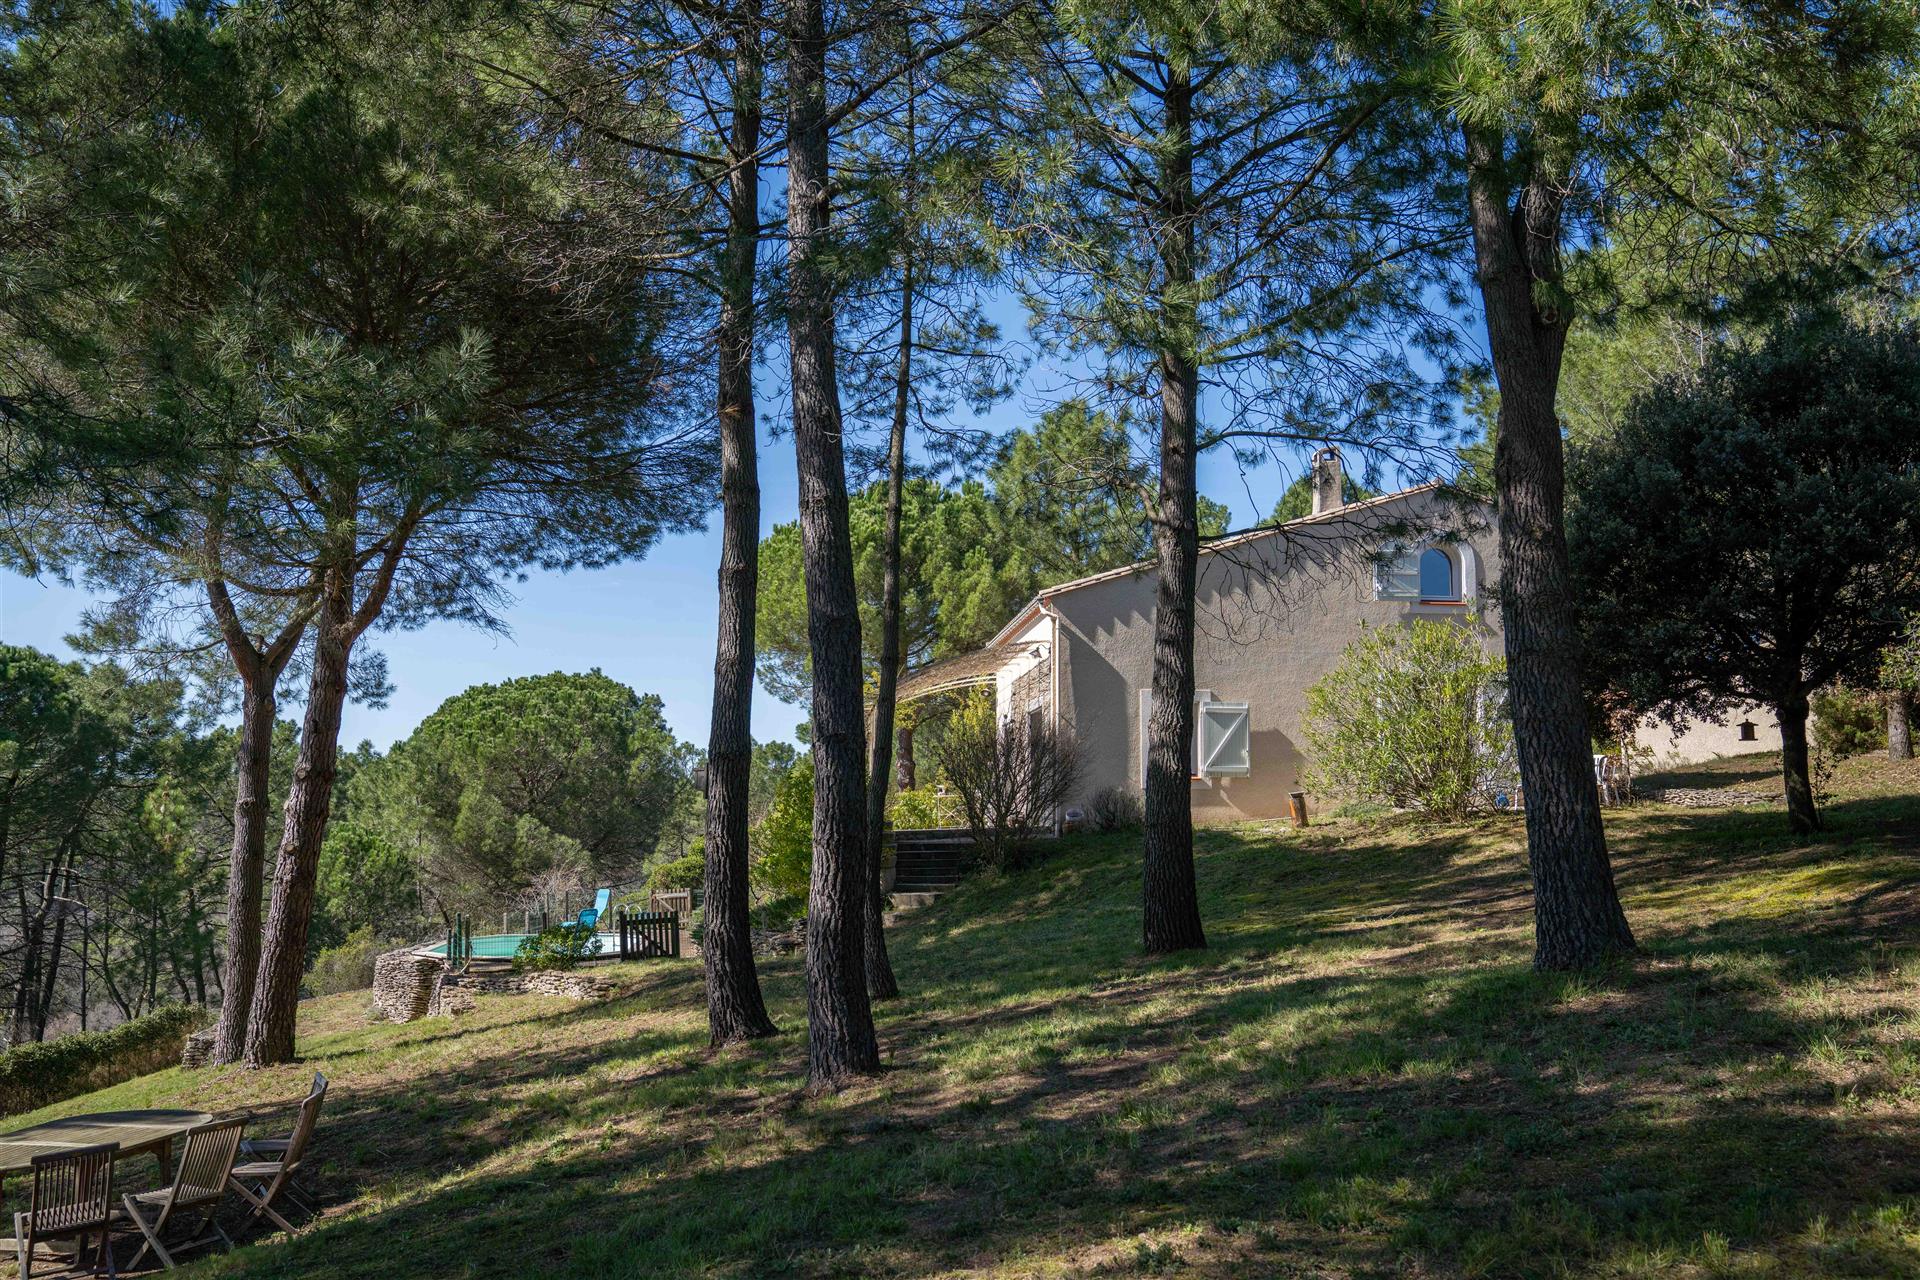 Vilă 145 m² pe un teren mare, cu vedere panoramică în sudul Franței